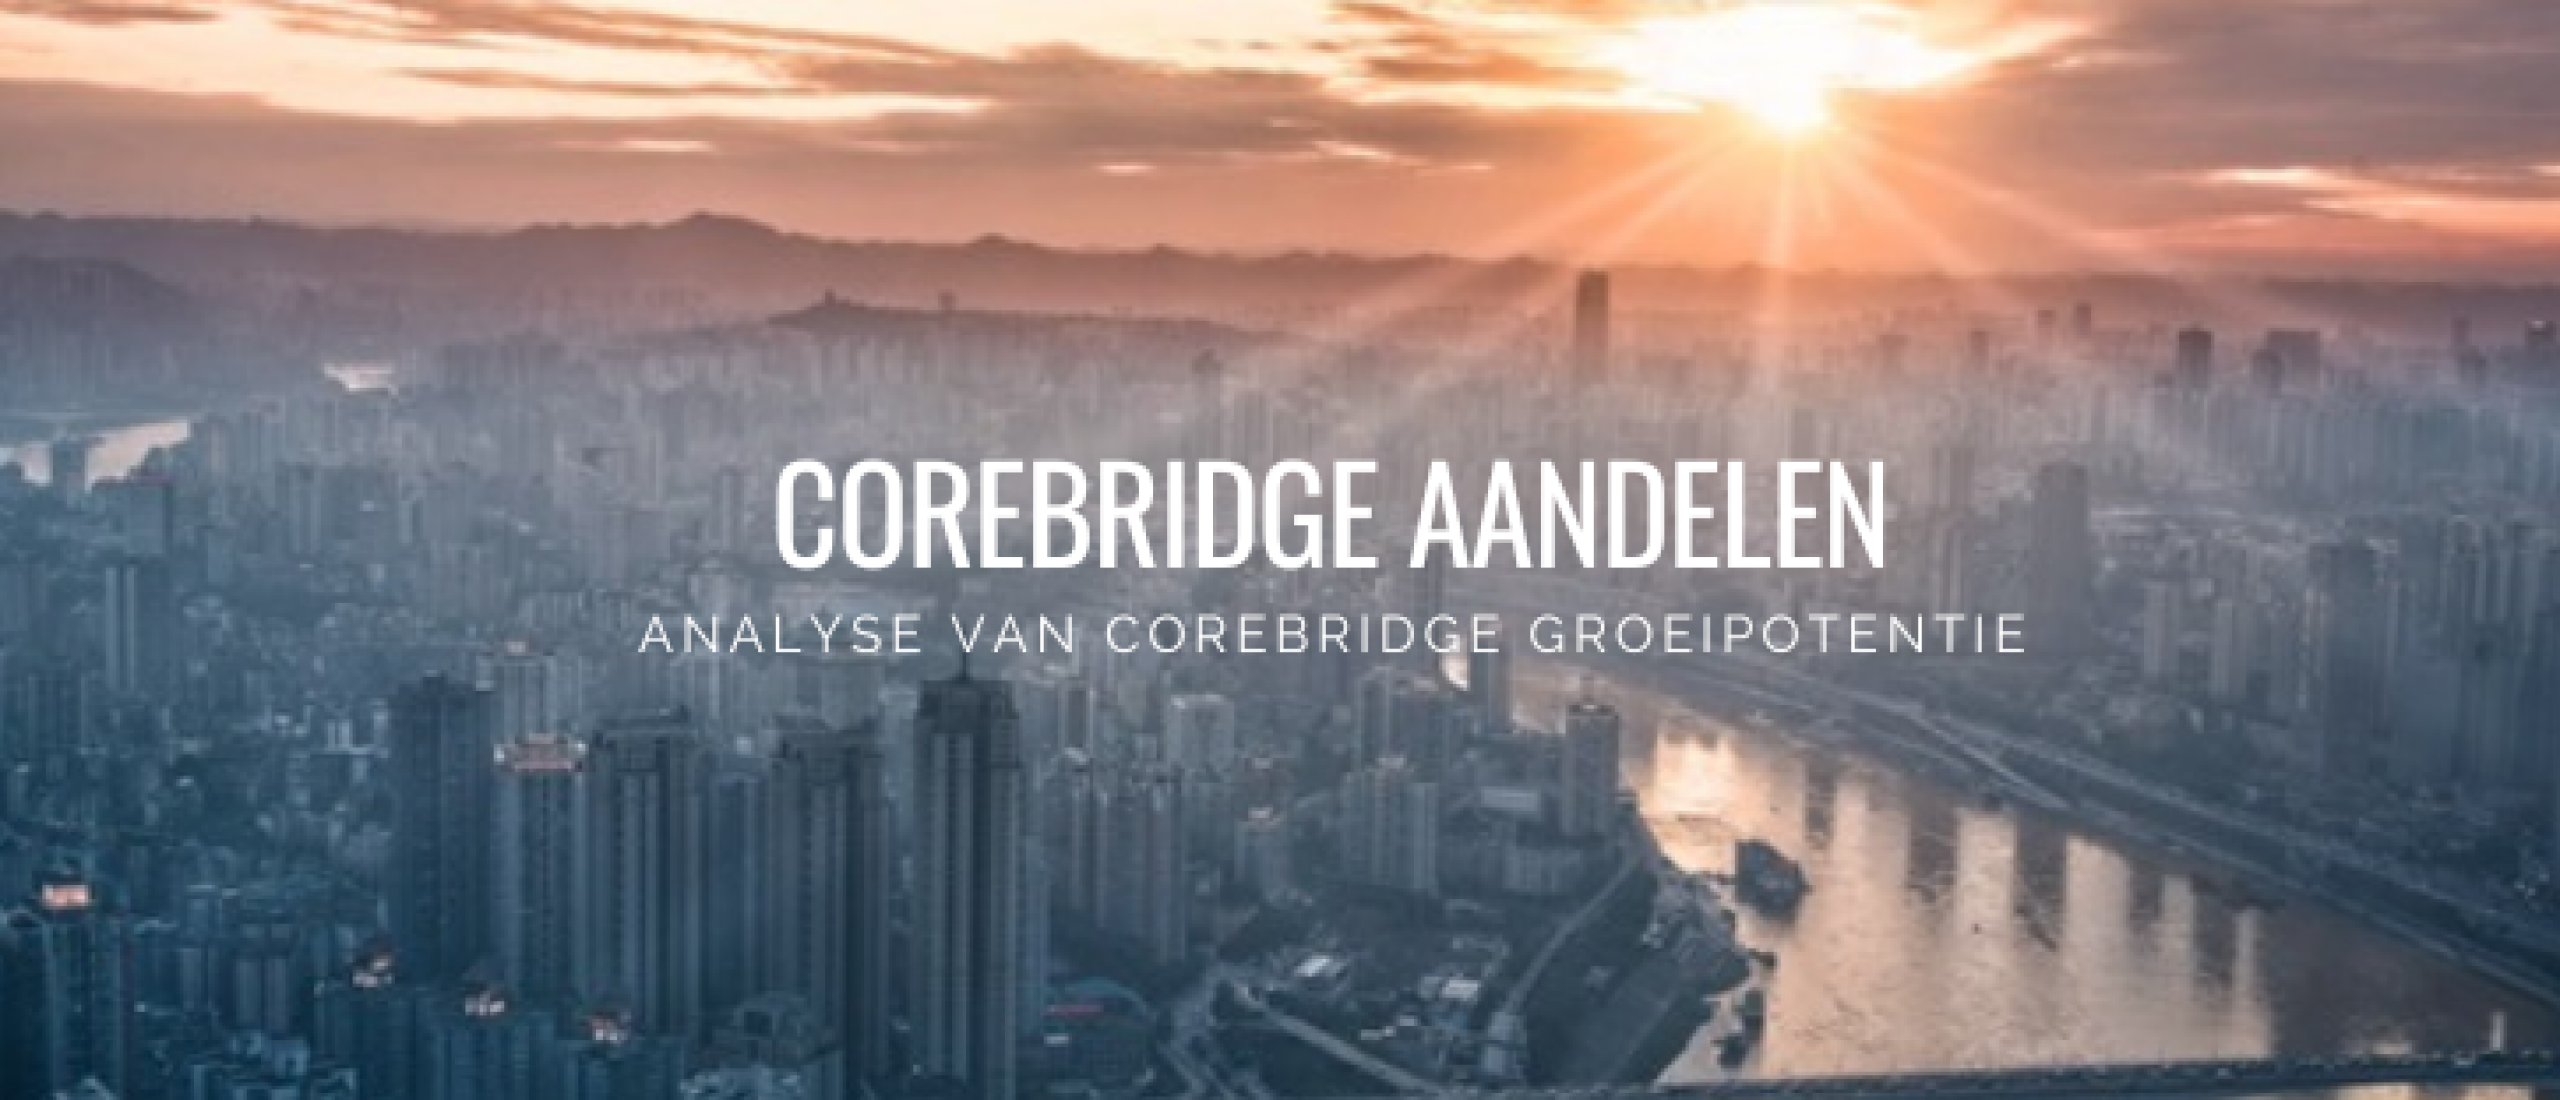 corebridge-aandelen-